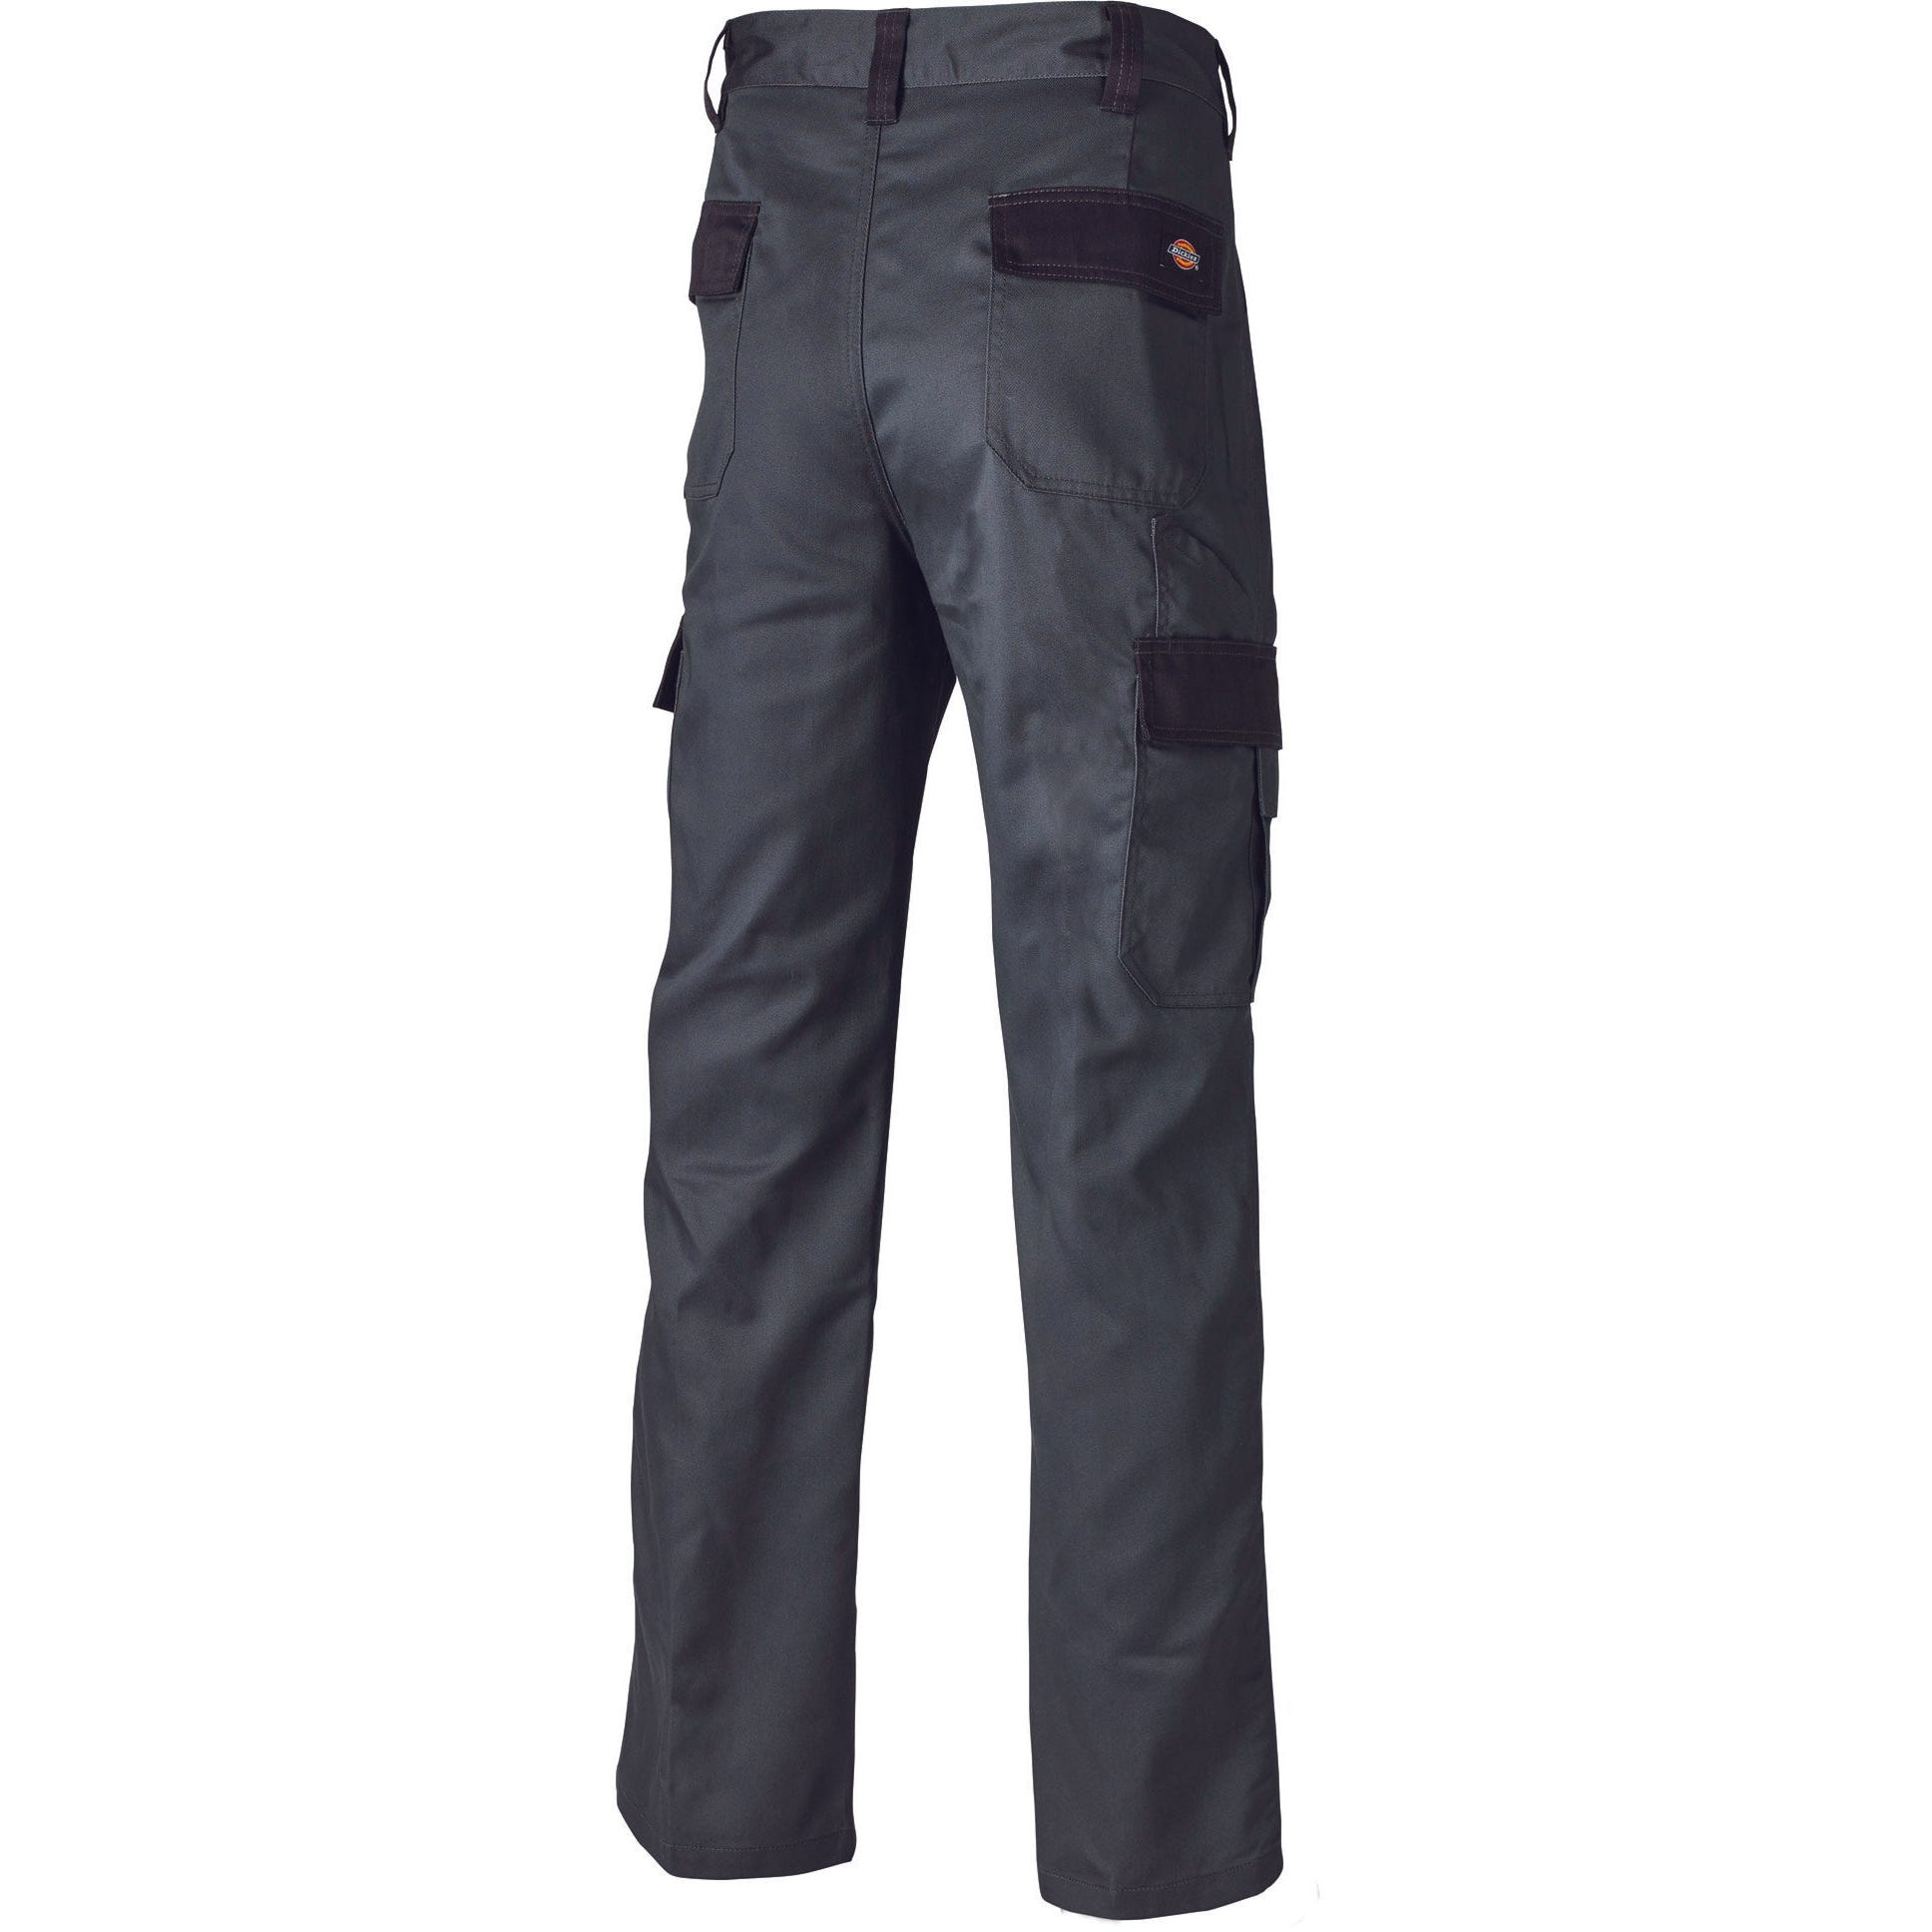 Pantalon Everyday Gris et noir- Dickies - Taille 44 6